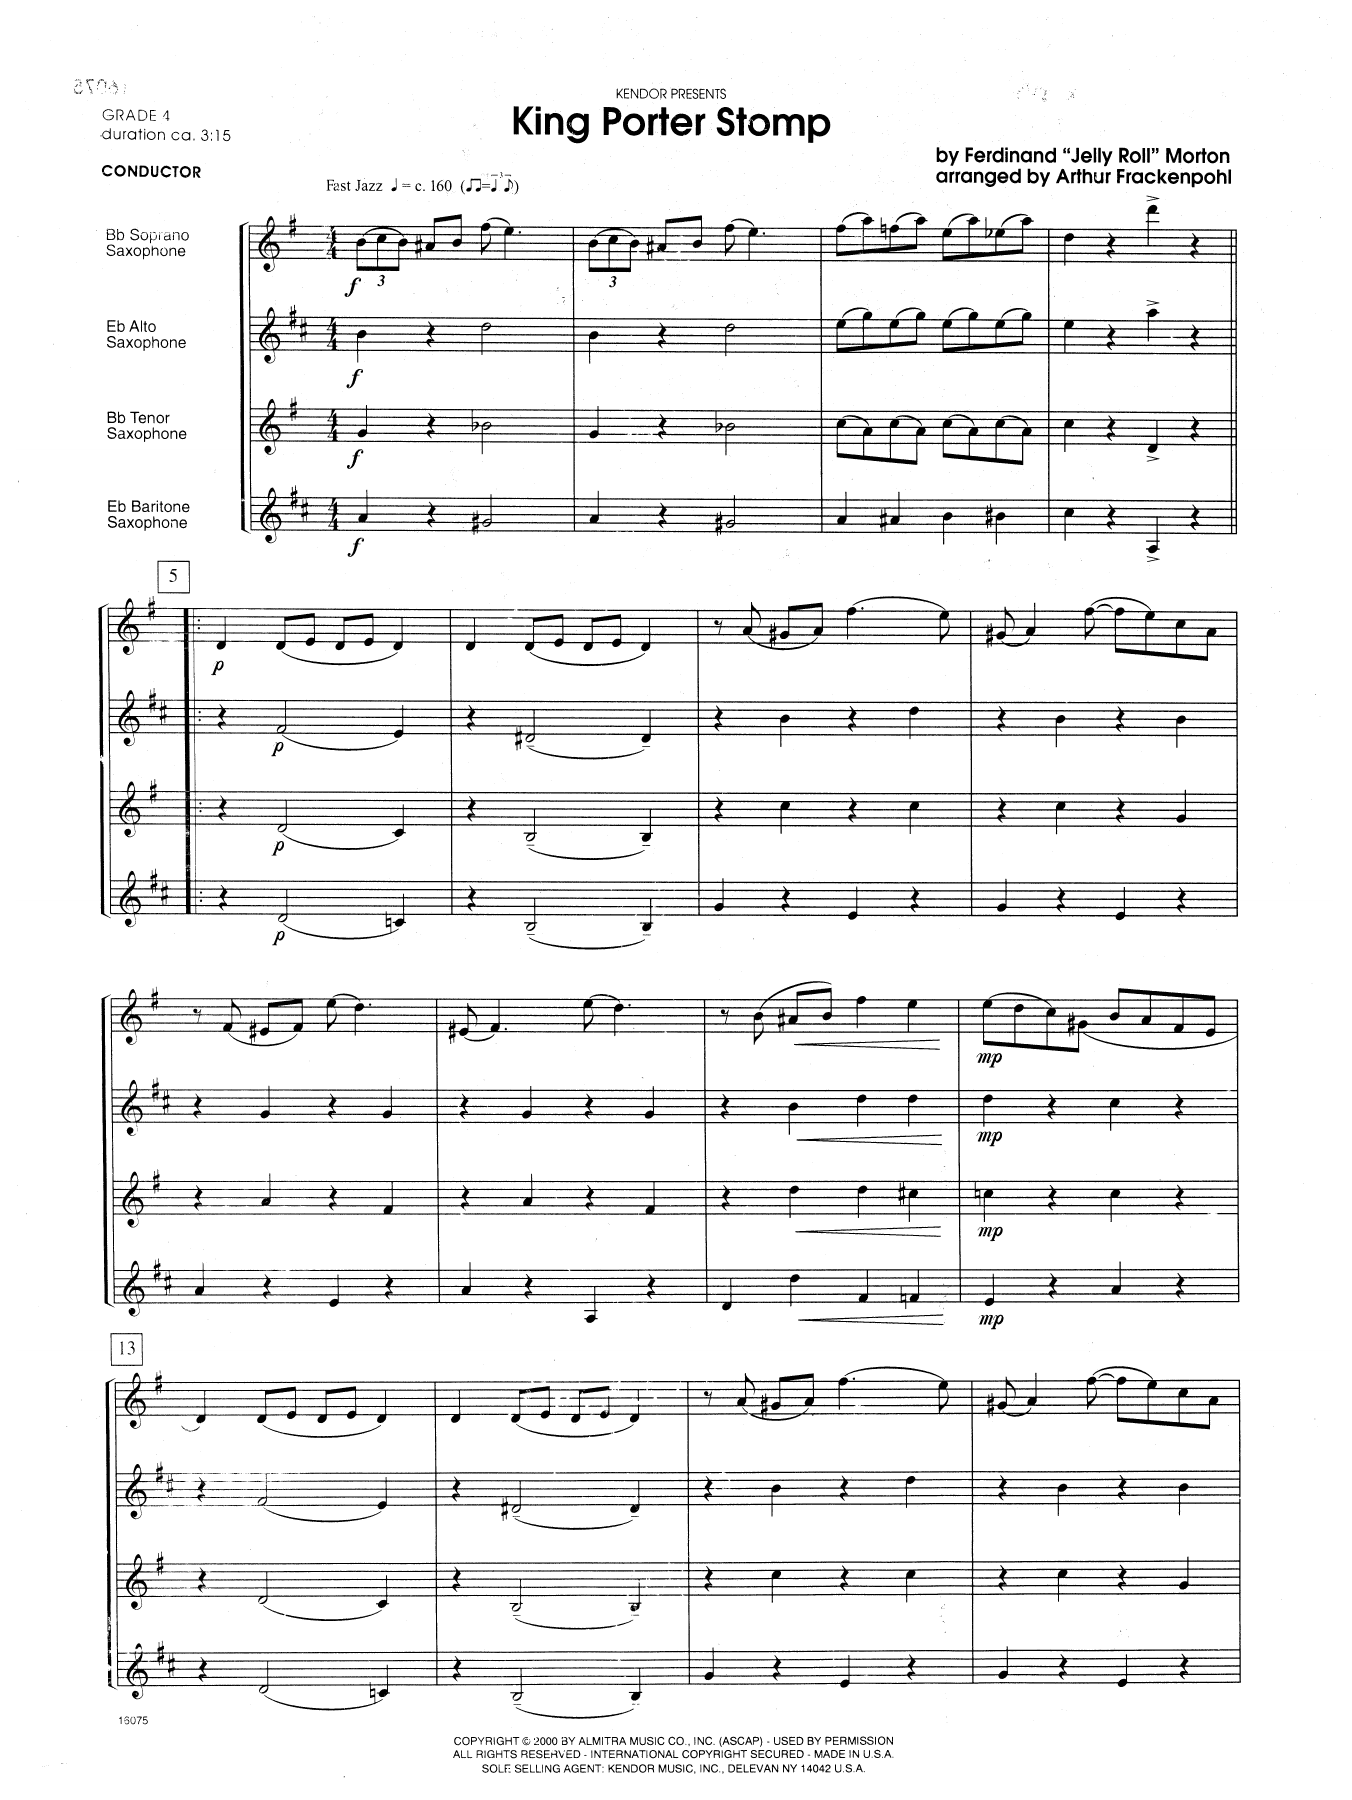 Download Arthur Frackenpohl King Porter Stomp - Full Score Sheet Music